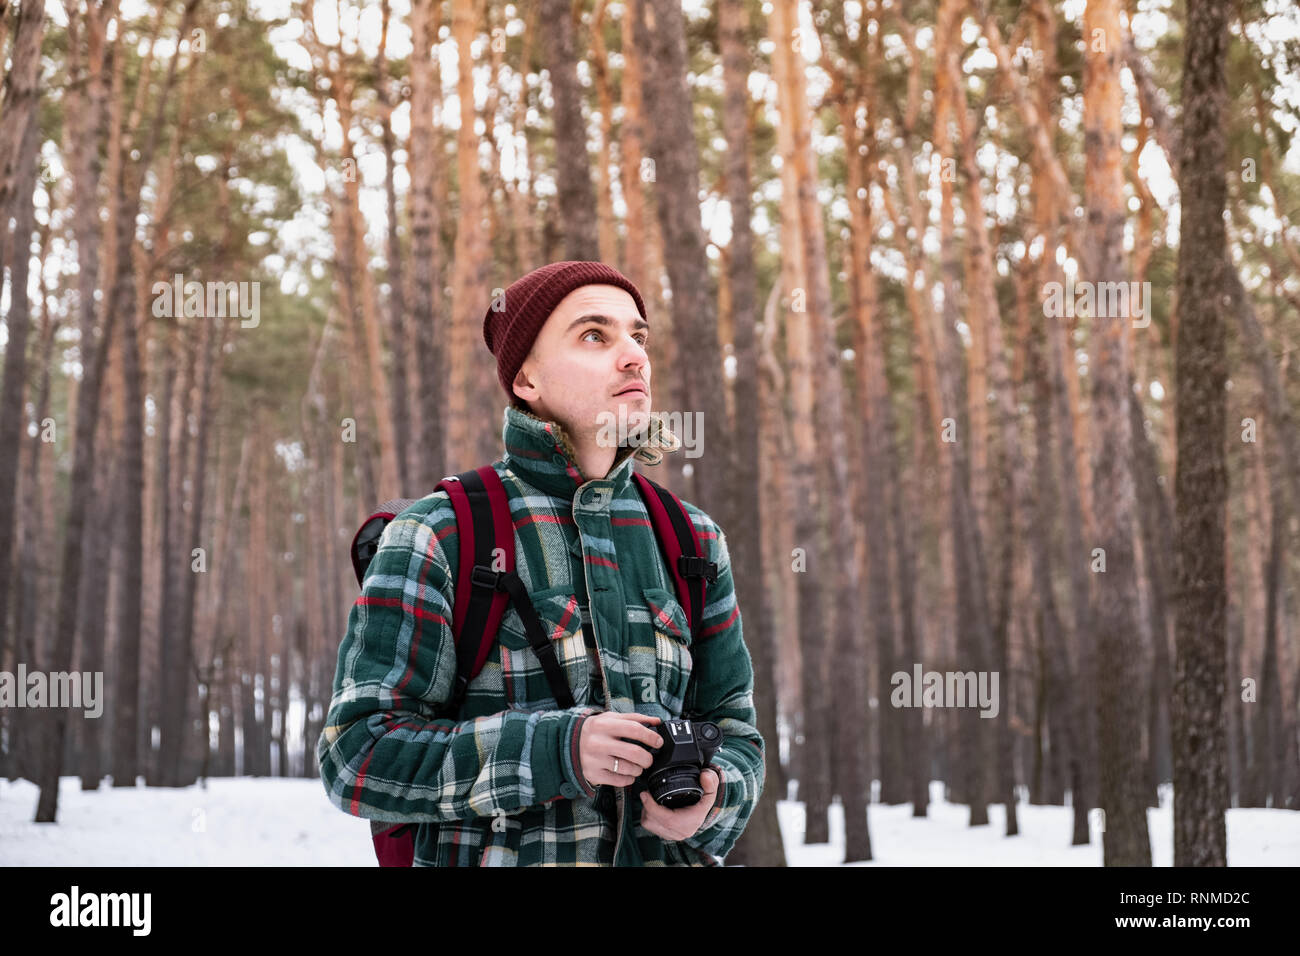 Wandern männliche Person im Winter Wald fotografieren. Mann in karierten winter Shirt im schönen verschneiten Wald mit einem alten Film Kamera Stockfoto